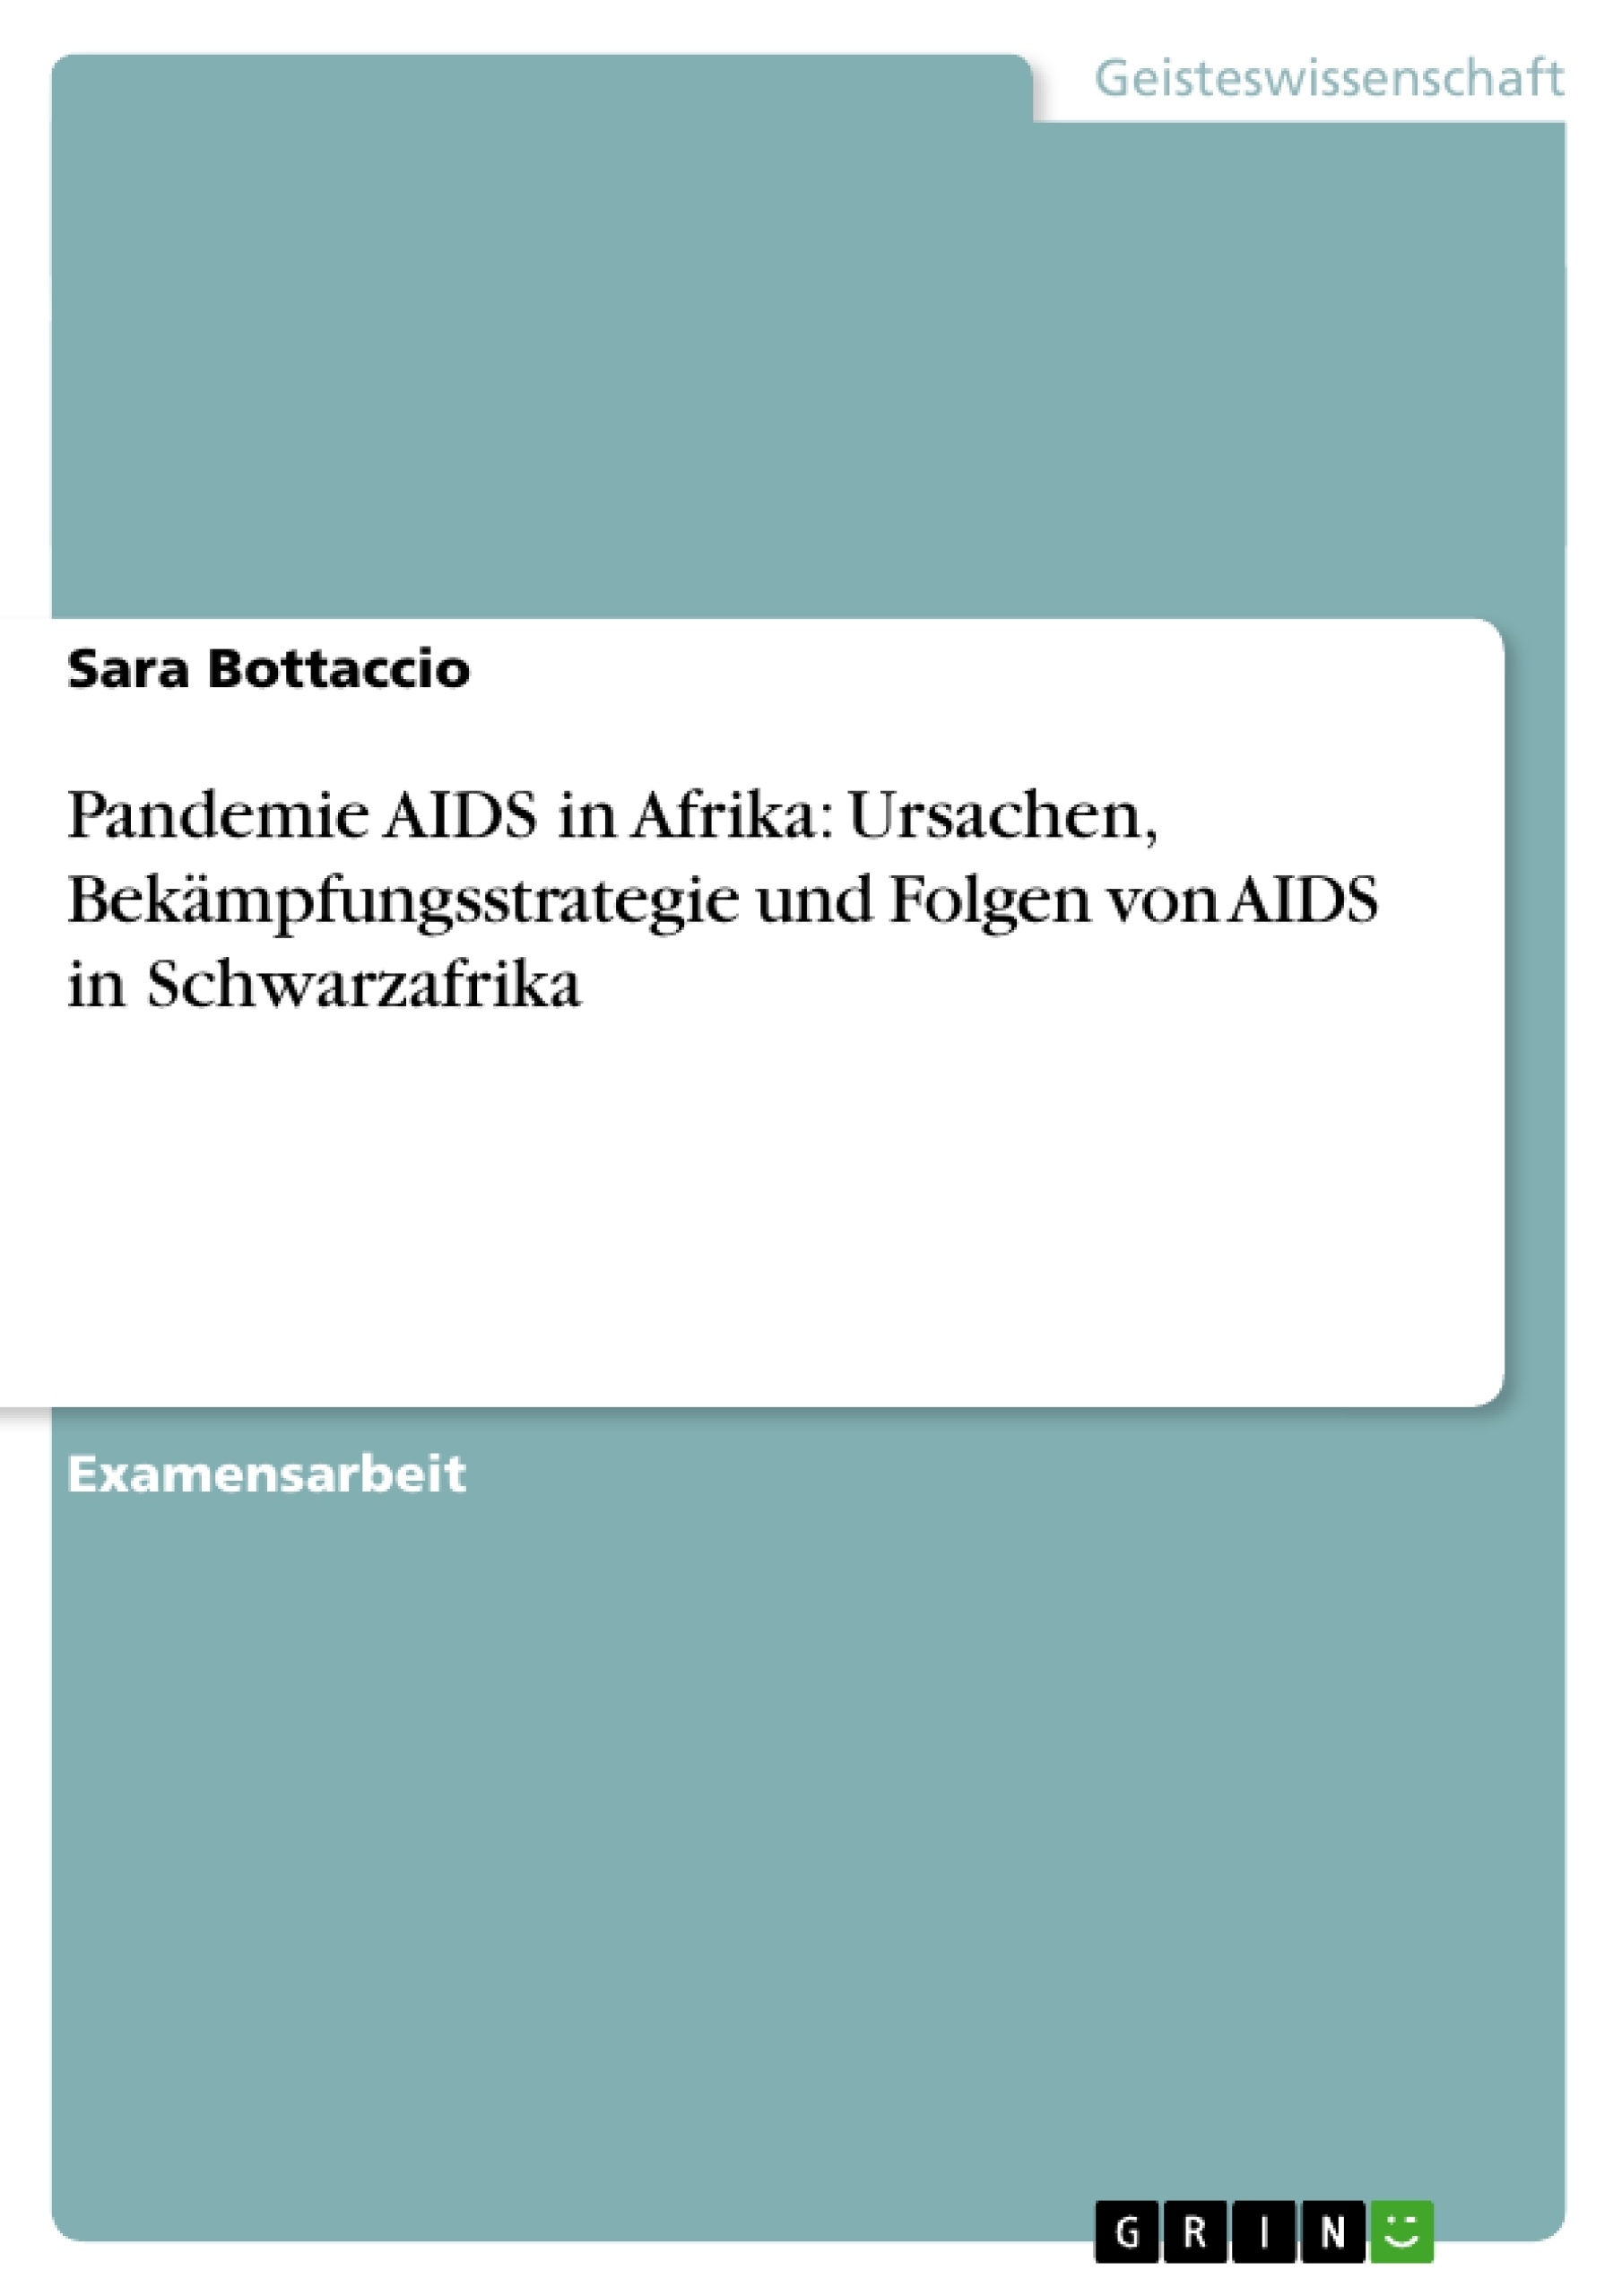 Title: Pandemie AIDS in Afrika: Ursachen, Bekämpfungsstrategie und Folgen von AIDS in Schwarzafrika